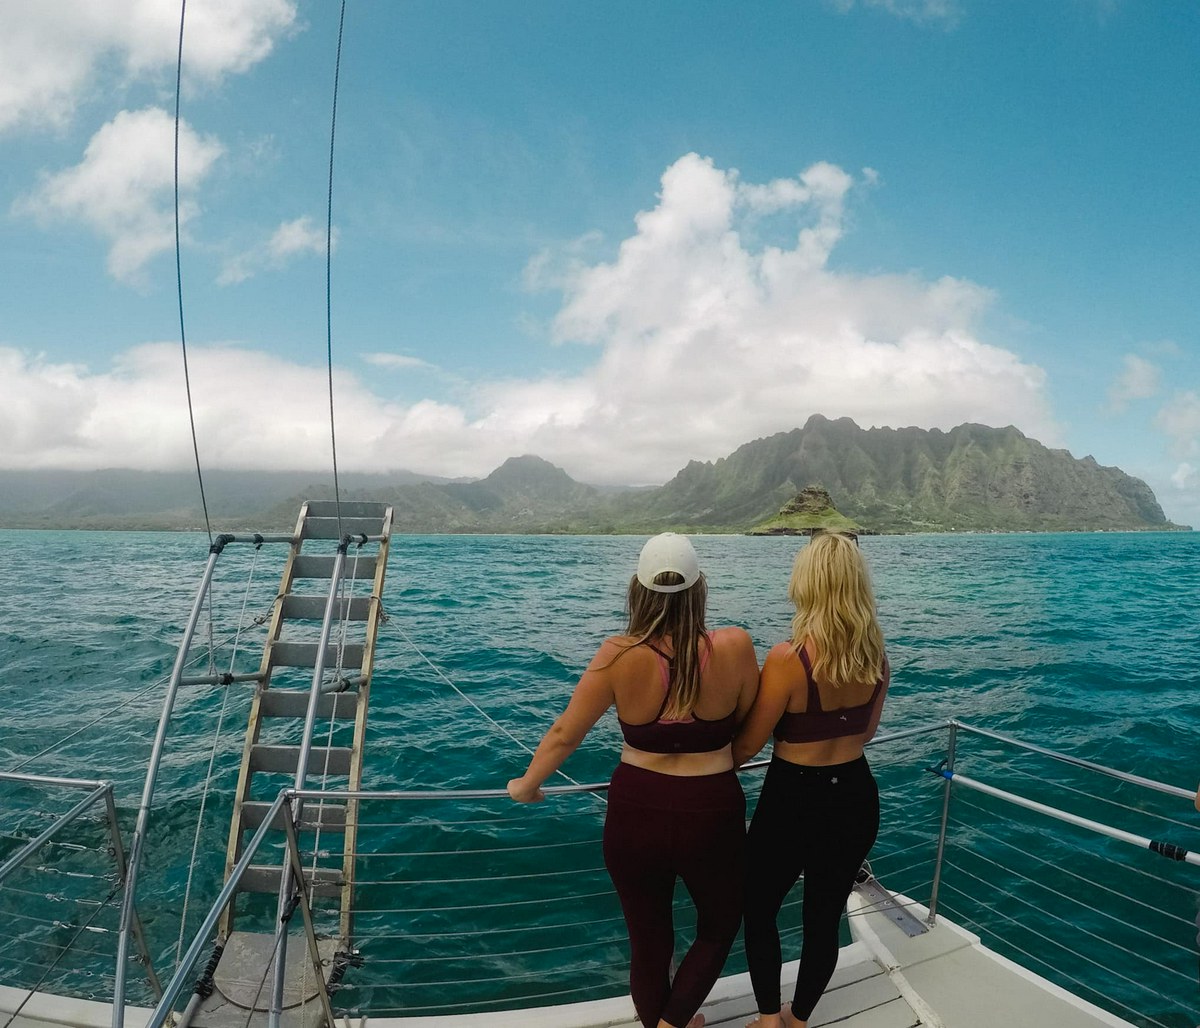 Two friends on a boat tour at Kualoa ranch near Kailua and Kaneohe Oahu